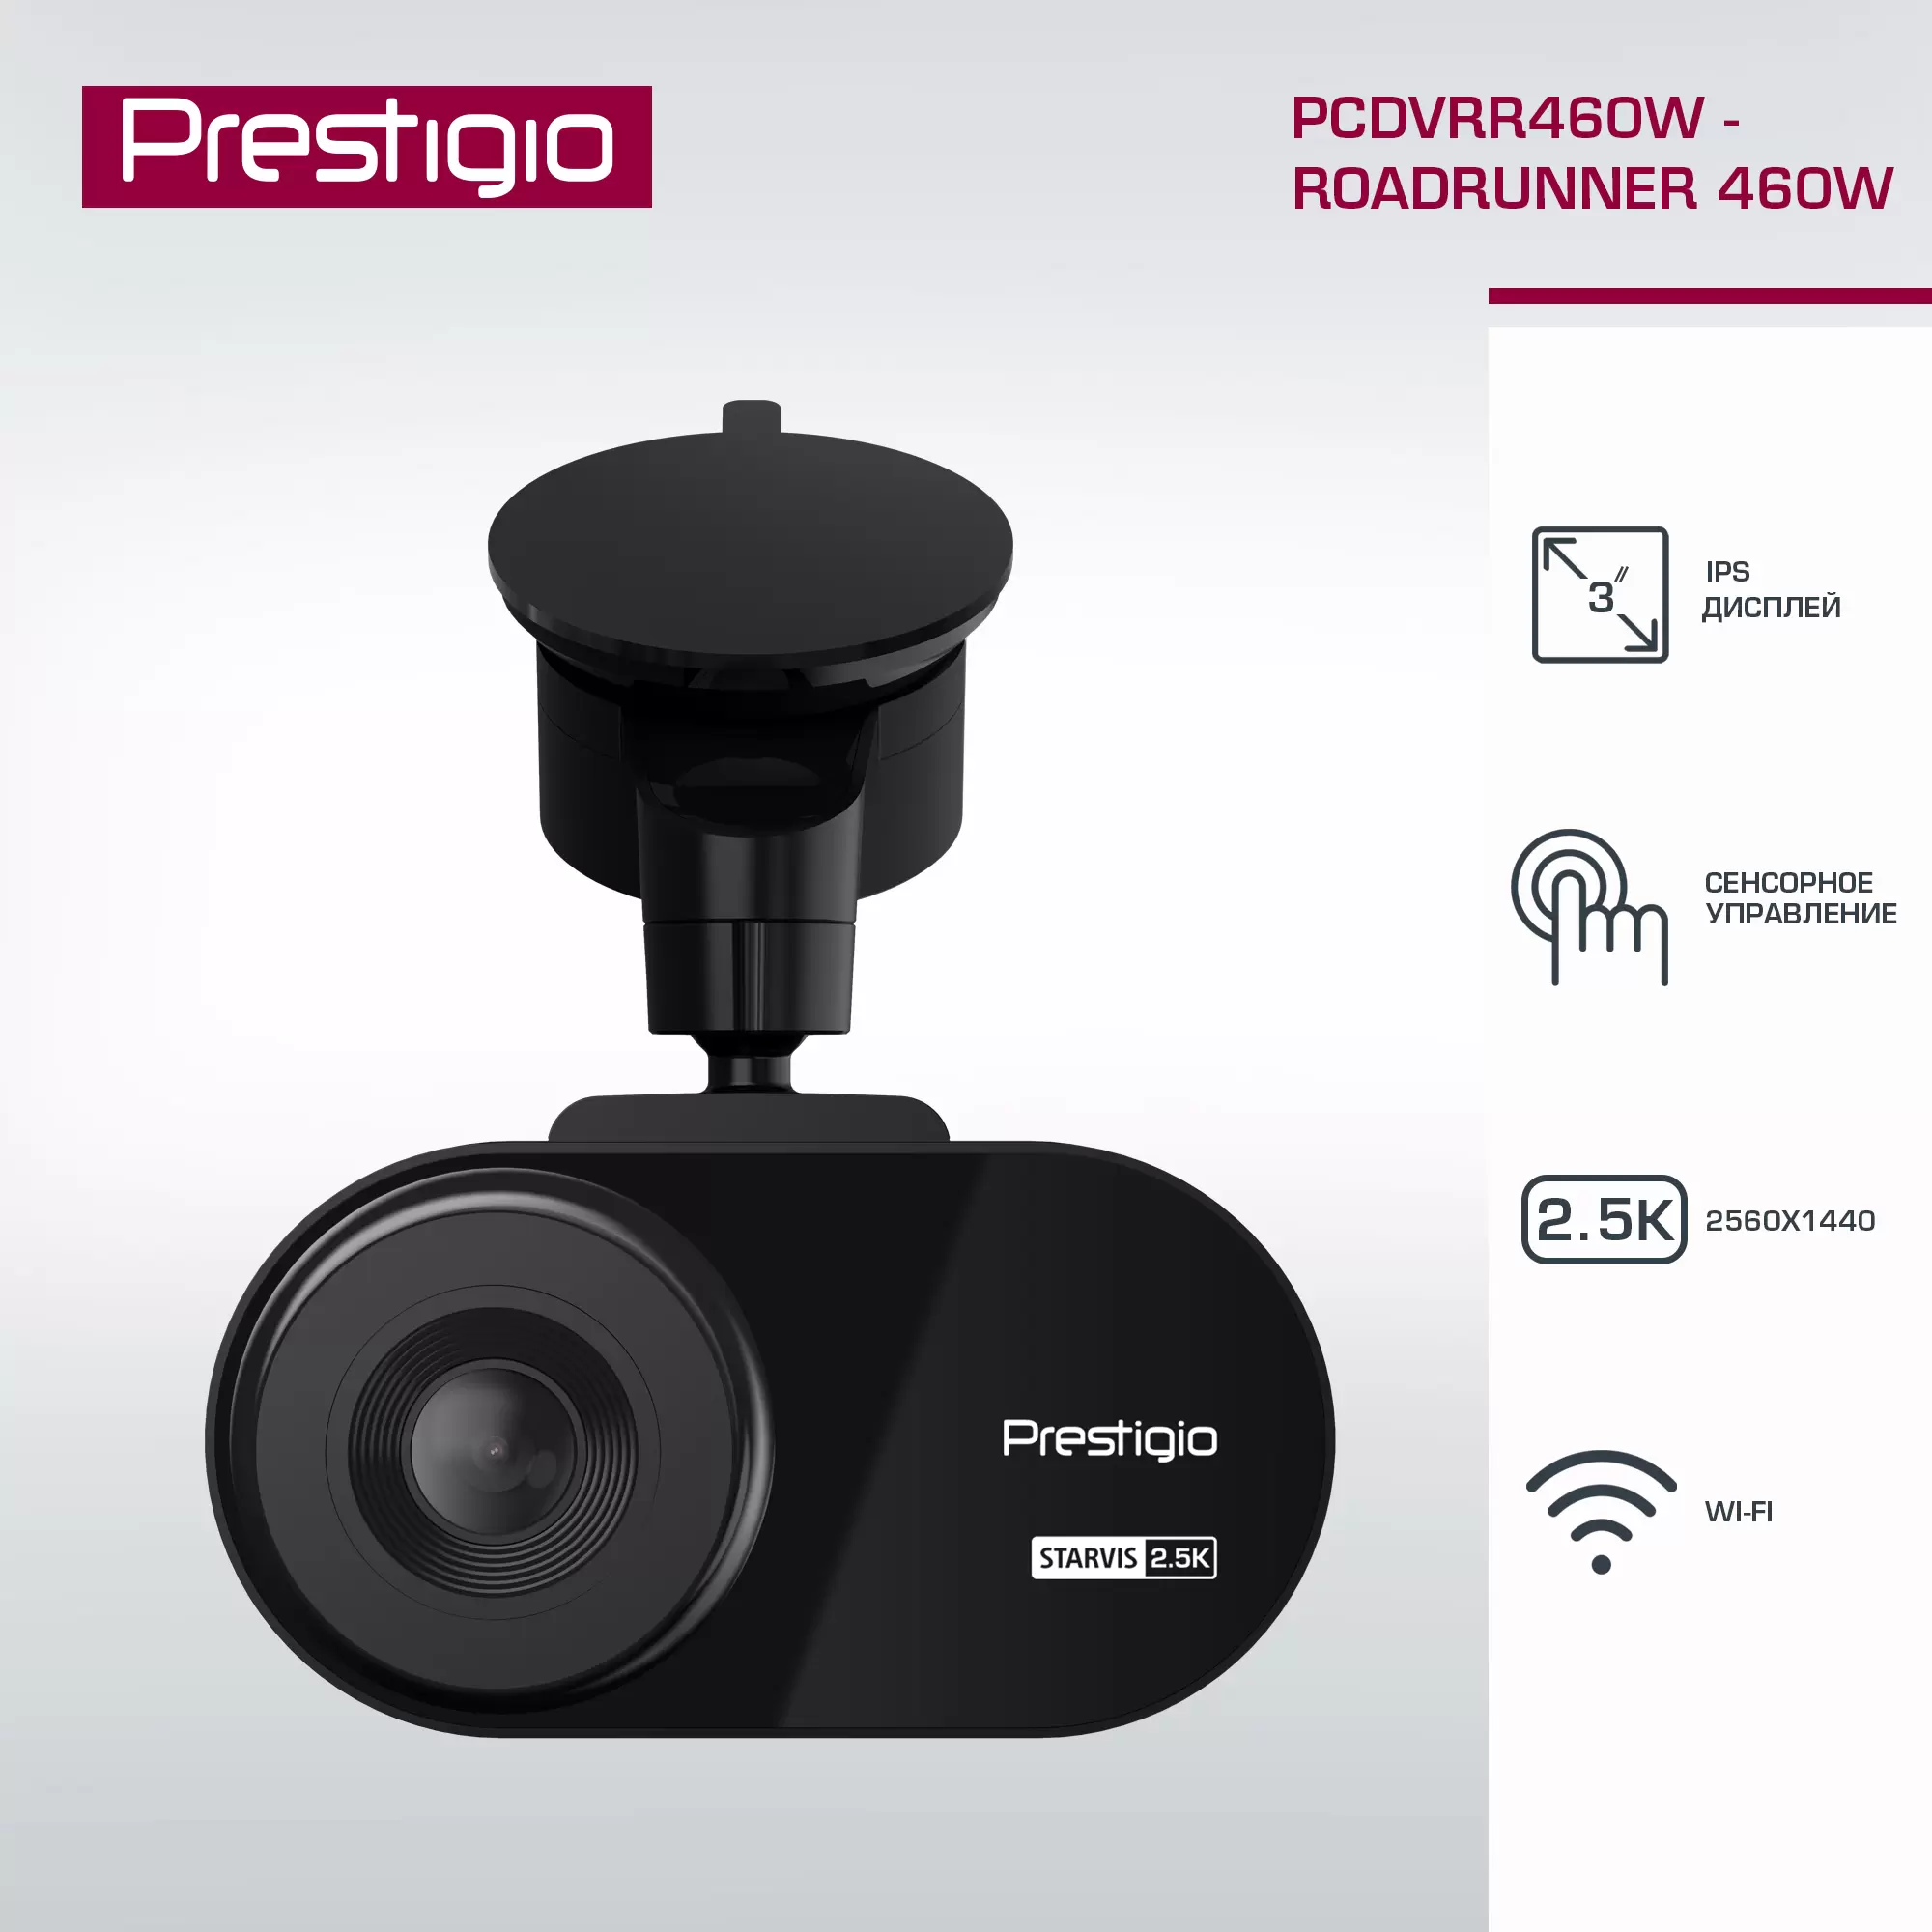 Видеорегистратор Prestigio RoadRunner 2.5K PCDVRR460W, 3-- WQHD 2560x1440, c WI-FI - VLARNIKA в Донецке